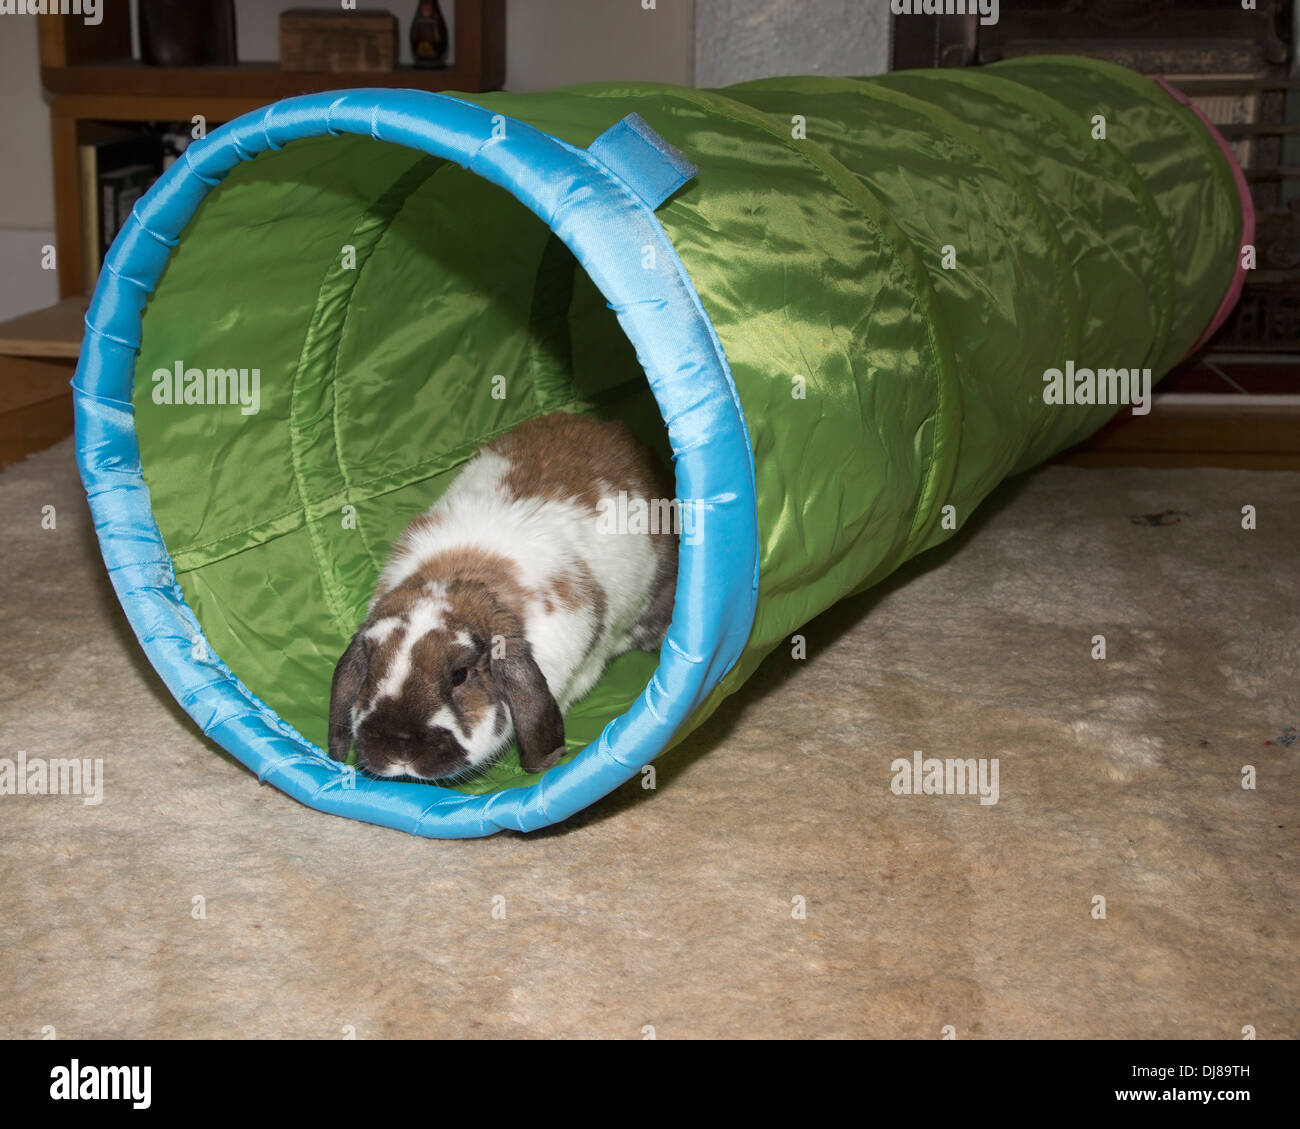 Pet Holland Lop conejo enano jugando en túnel de juguete Foto de stock